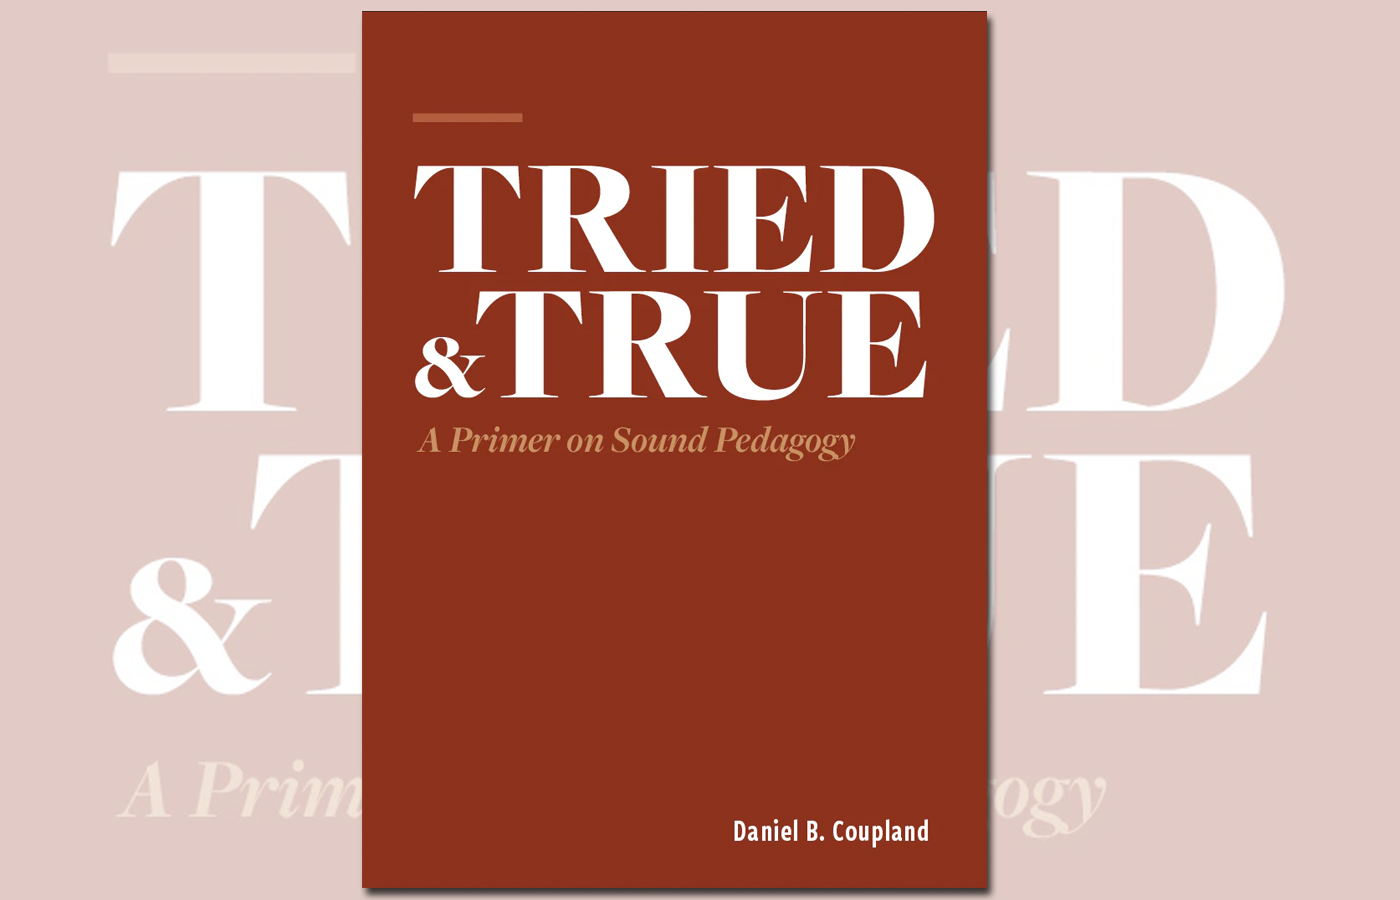 Book cover of "Tried & True"